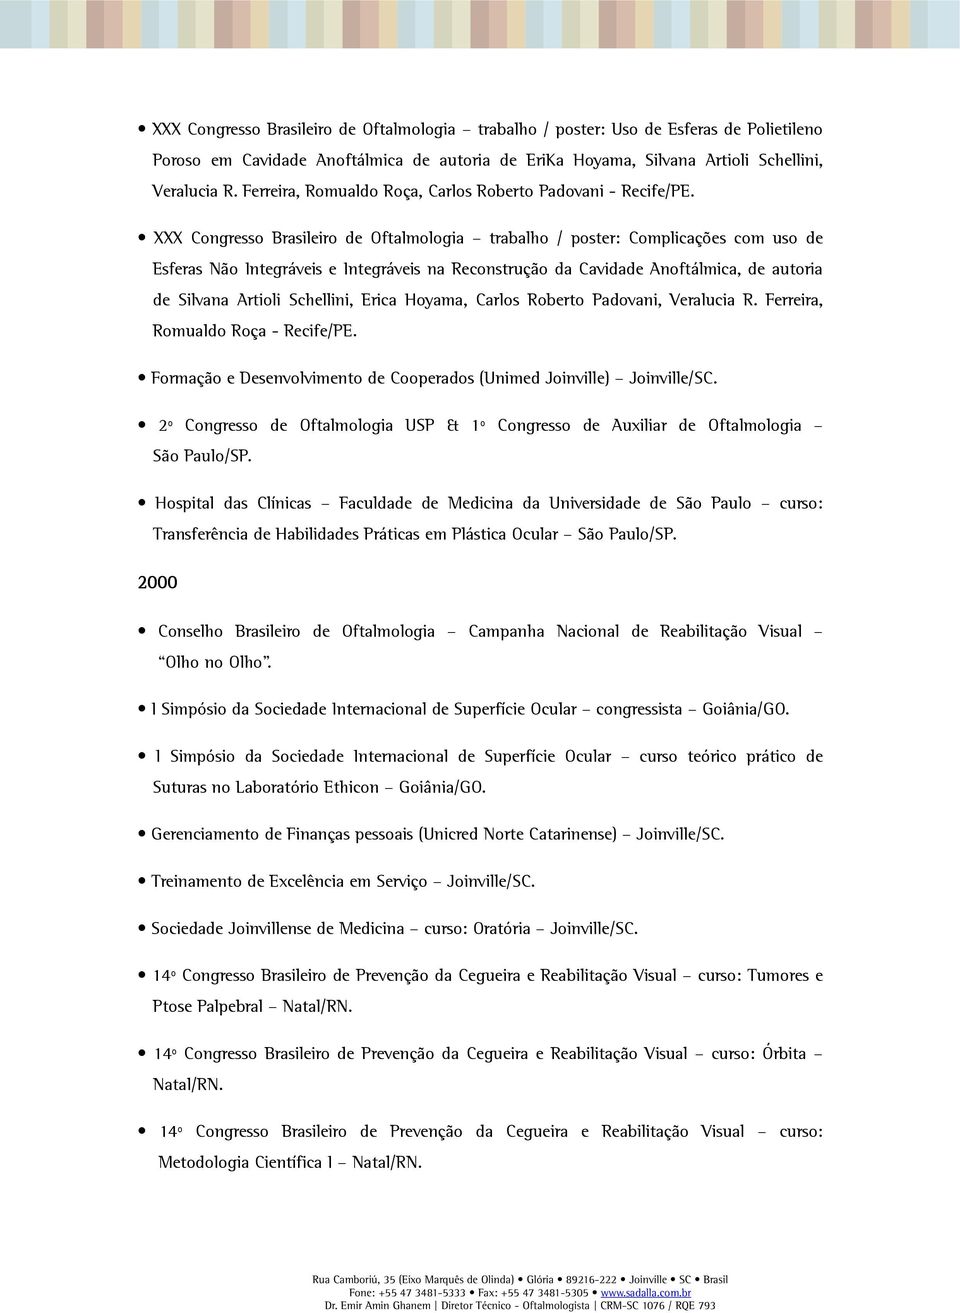 XXX Congresso Brasileiro de Oftalmologia trabalho / poster: Complicações com uso de Esferas Não Integráveis e Integráveis na Reconstrução da Cavidade Anoftálmica, de autoria de Silvana Artioli